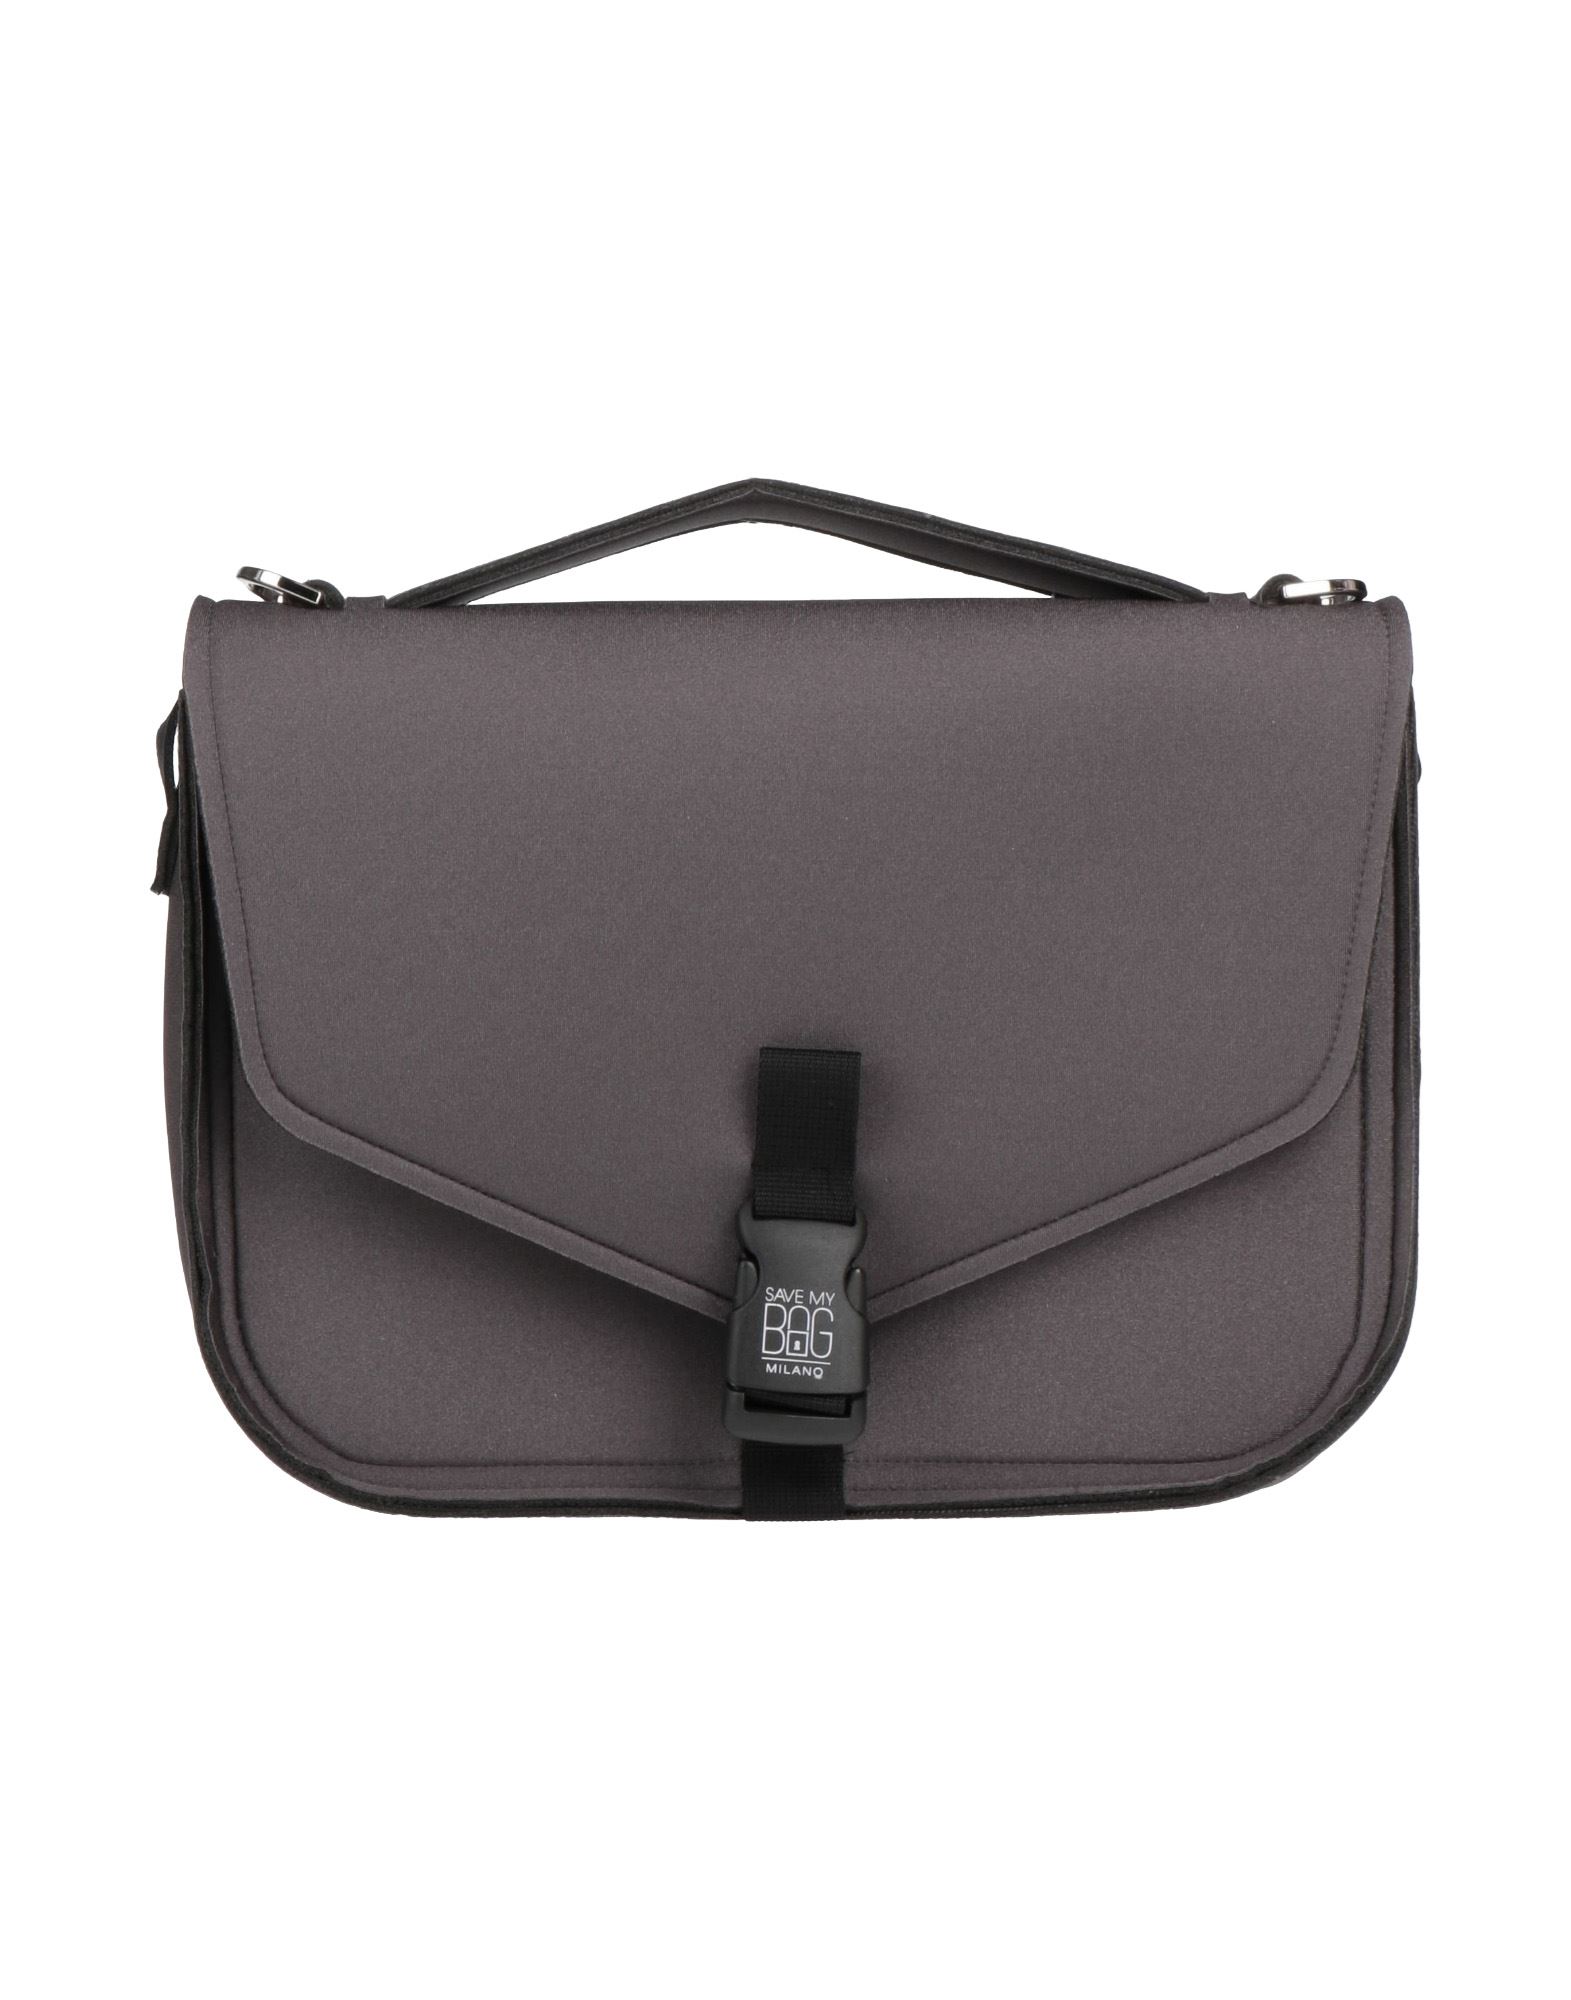 Save My Bag Handbags In Steel Grey